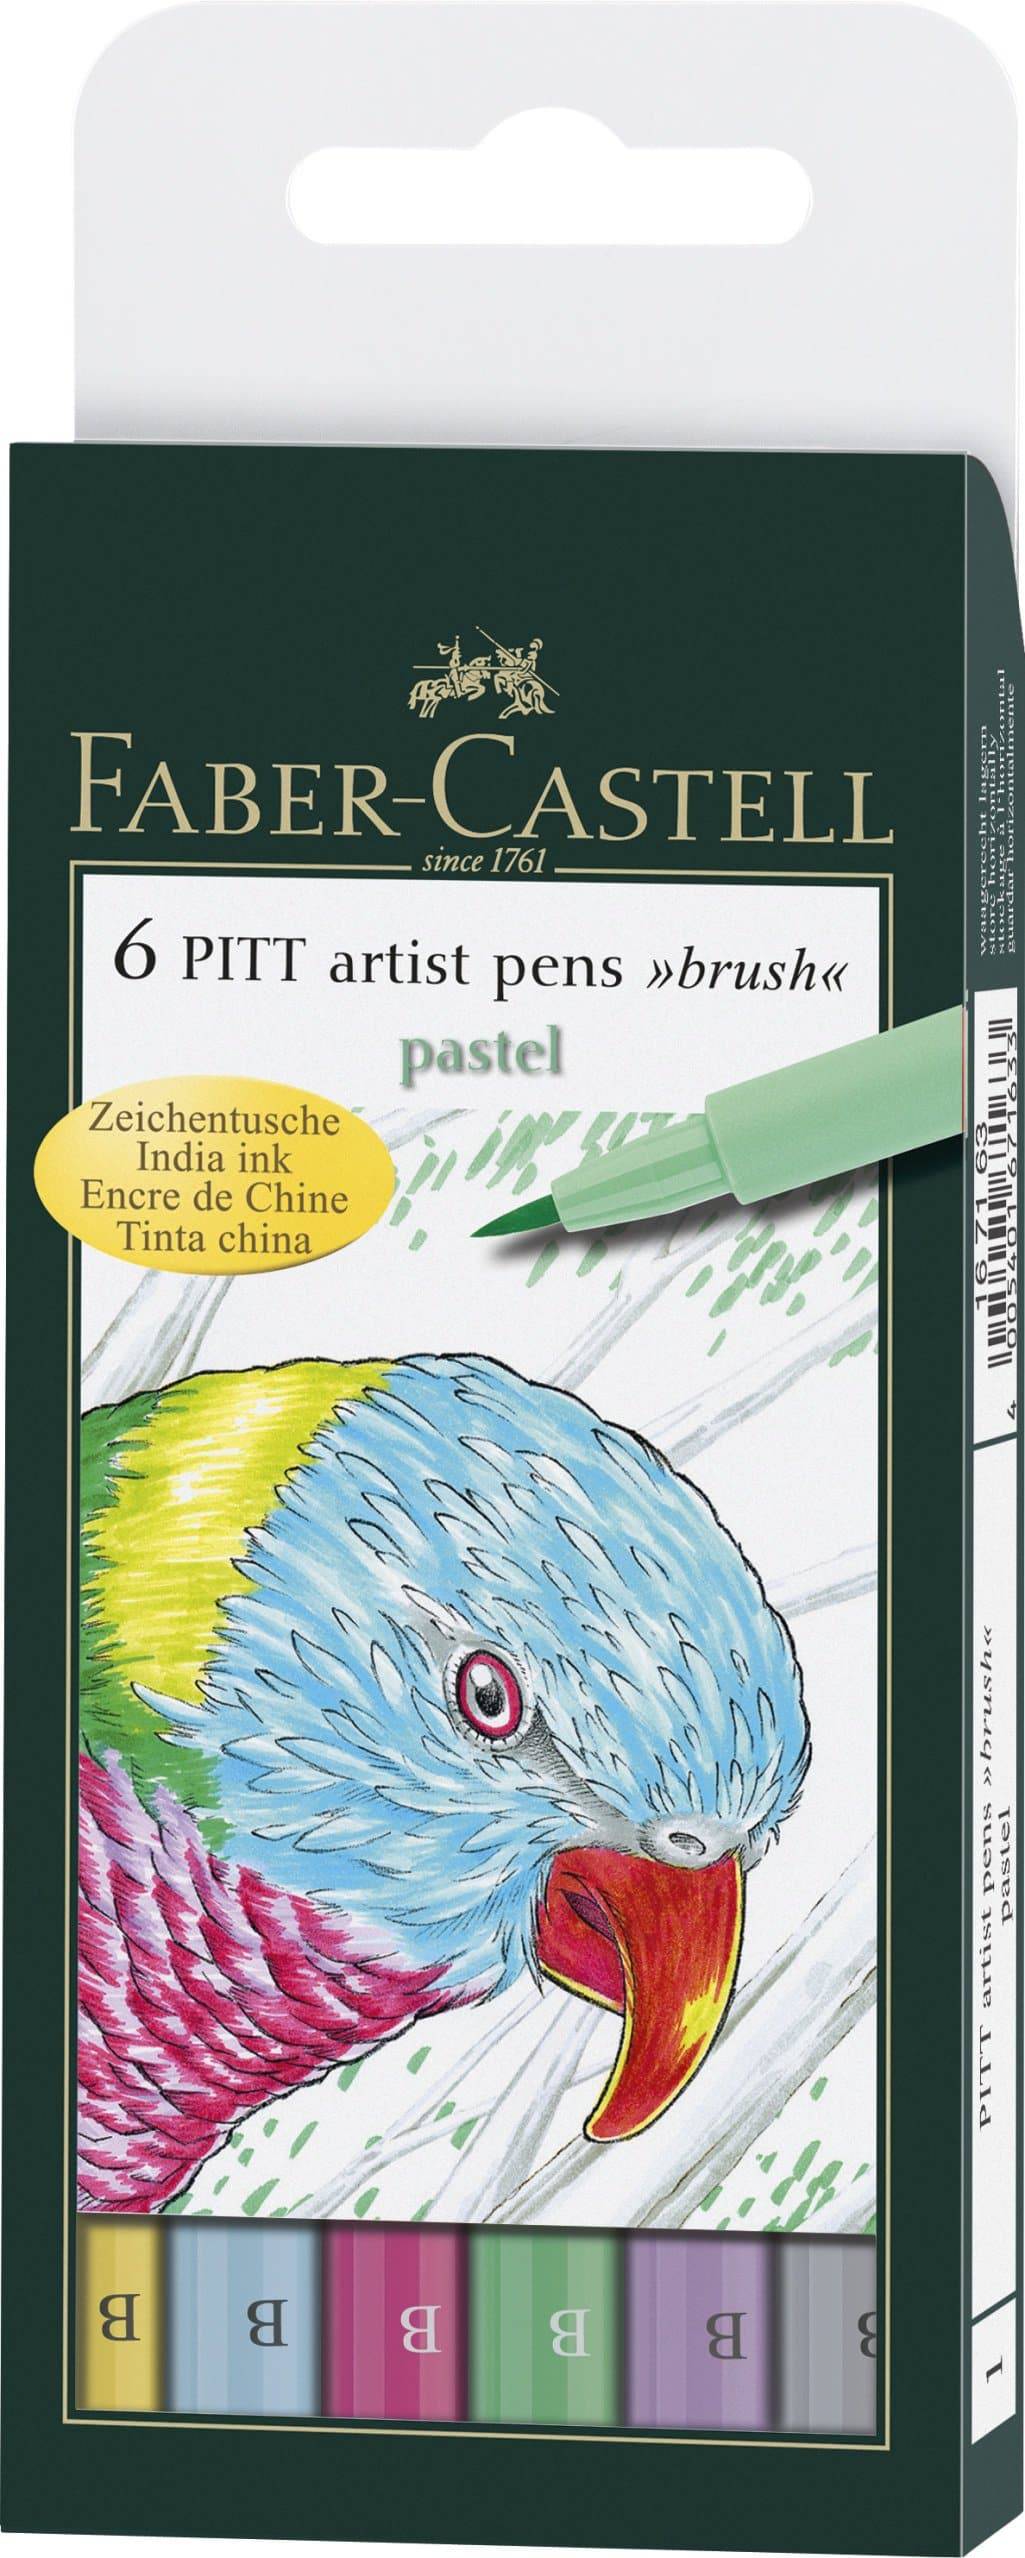 Pitt Artist Pen 'Pastel' Wallet of 6 - Blesket Canada